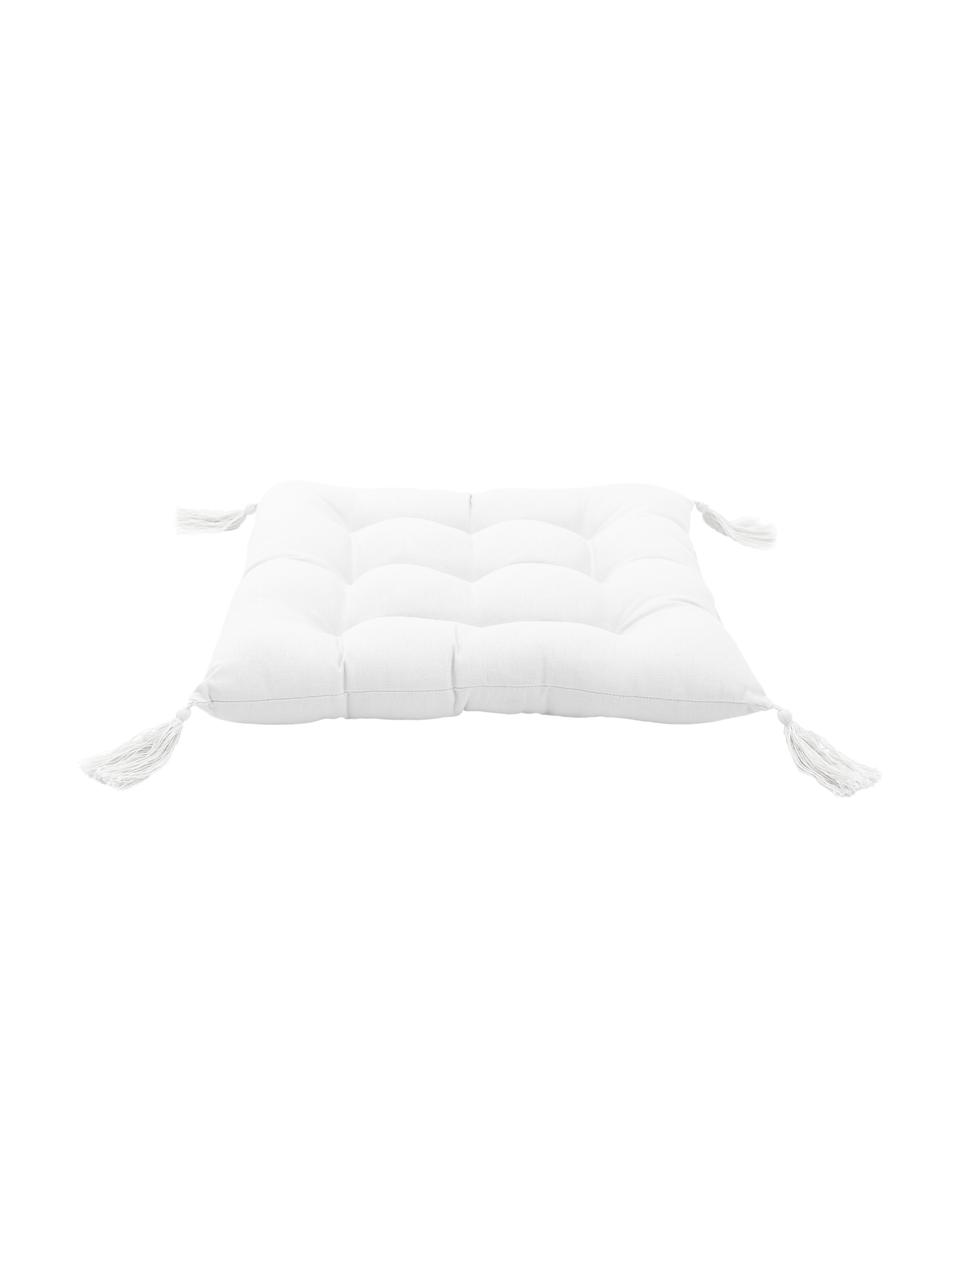 Cuscino sedia in cotone bianco con nappe Ava, Rivestimento: 100% cotone, Bianco, Larg. 40 x Lung. 40 cm